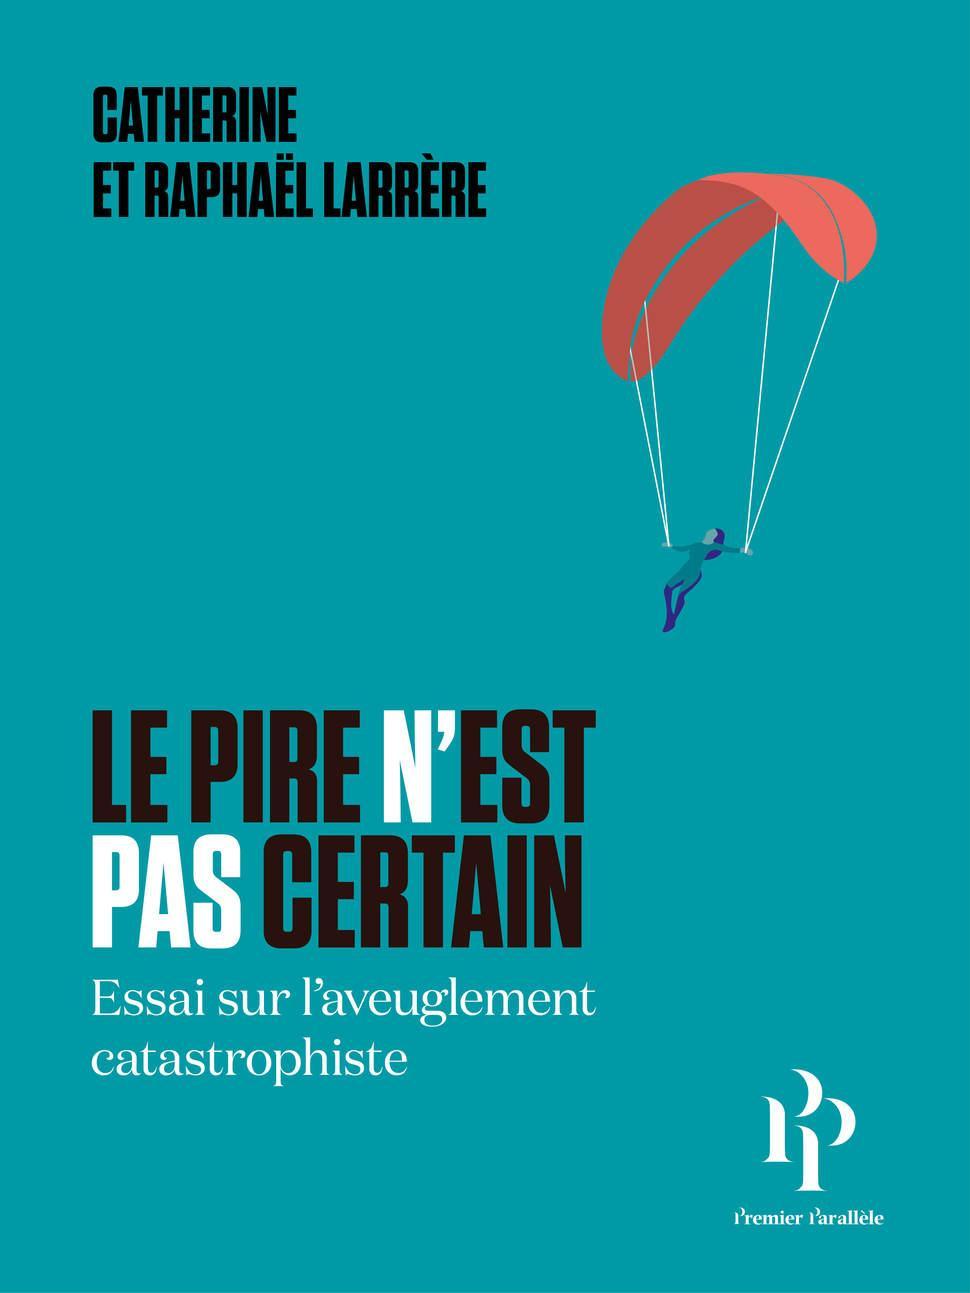 Le Pire n'est pas certain (French language, 2020, Premier Parallèle)